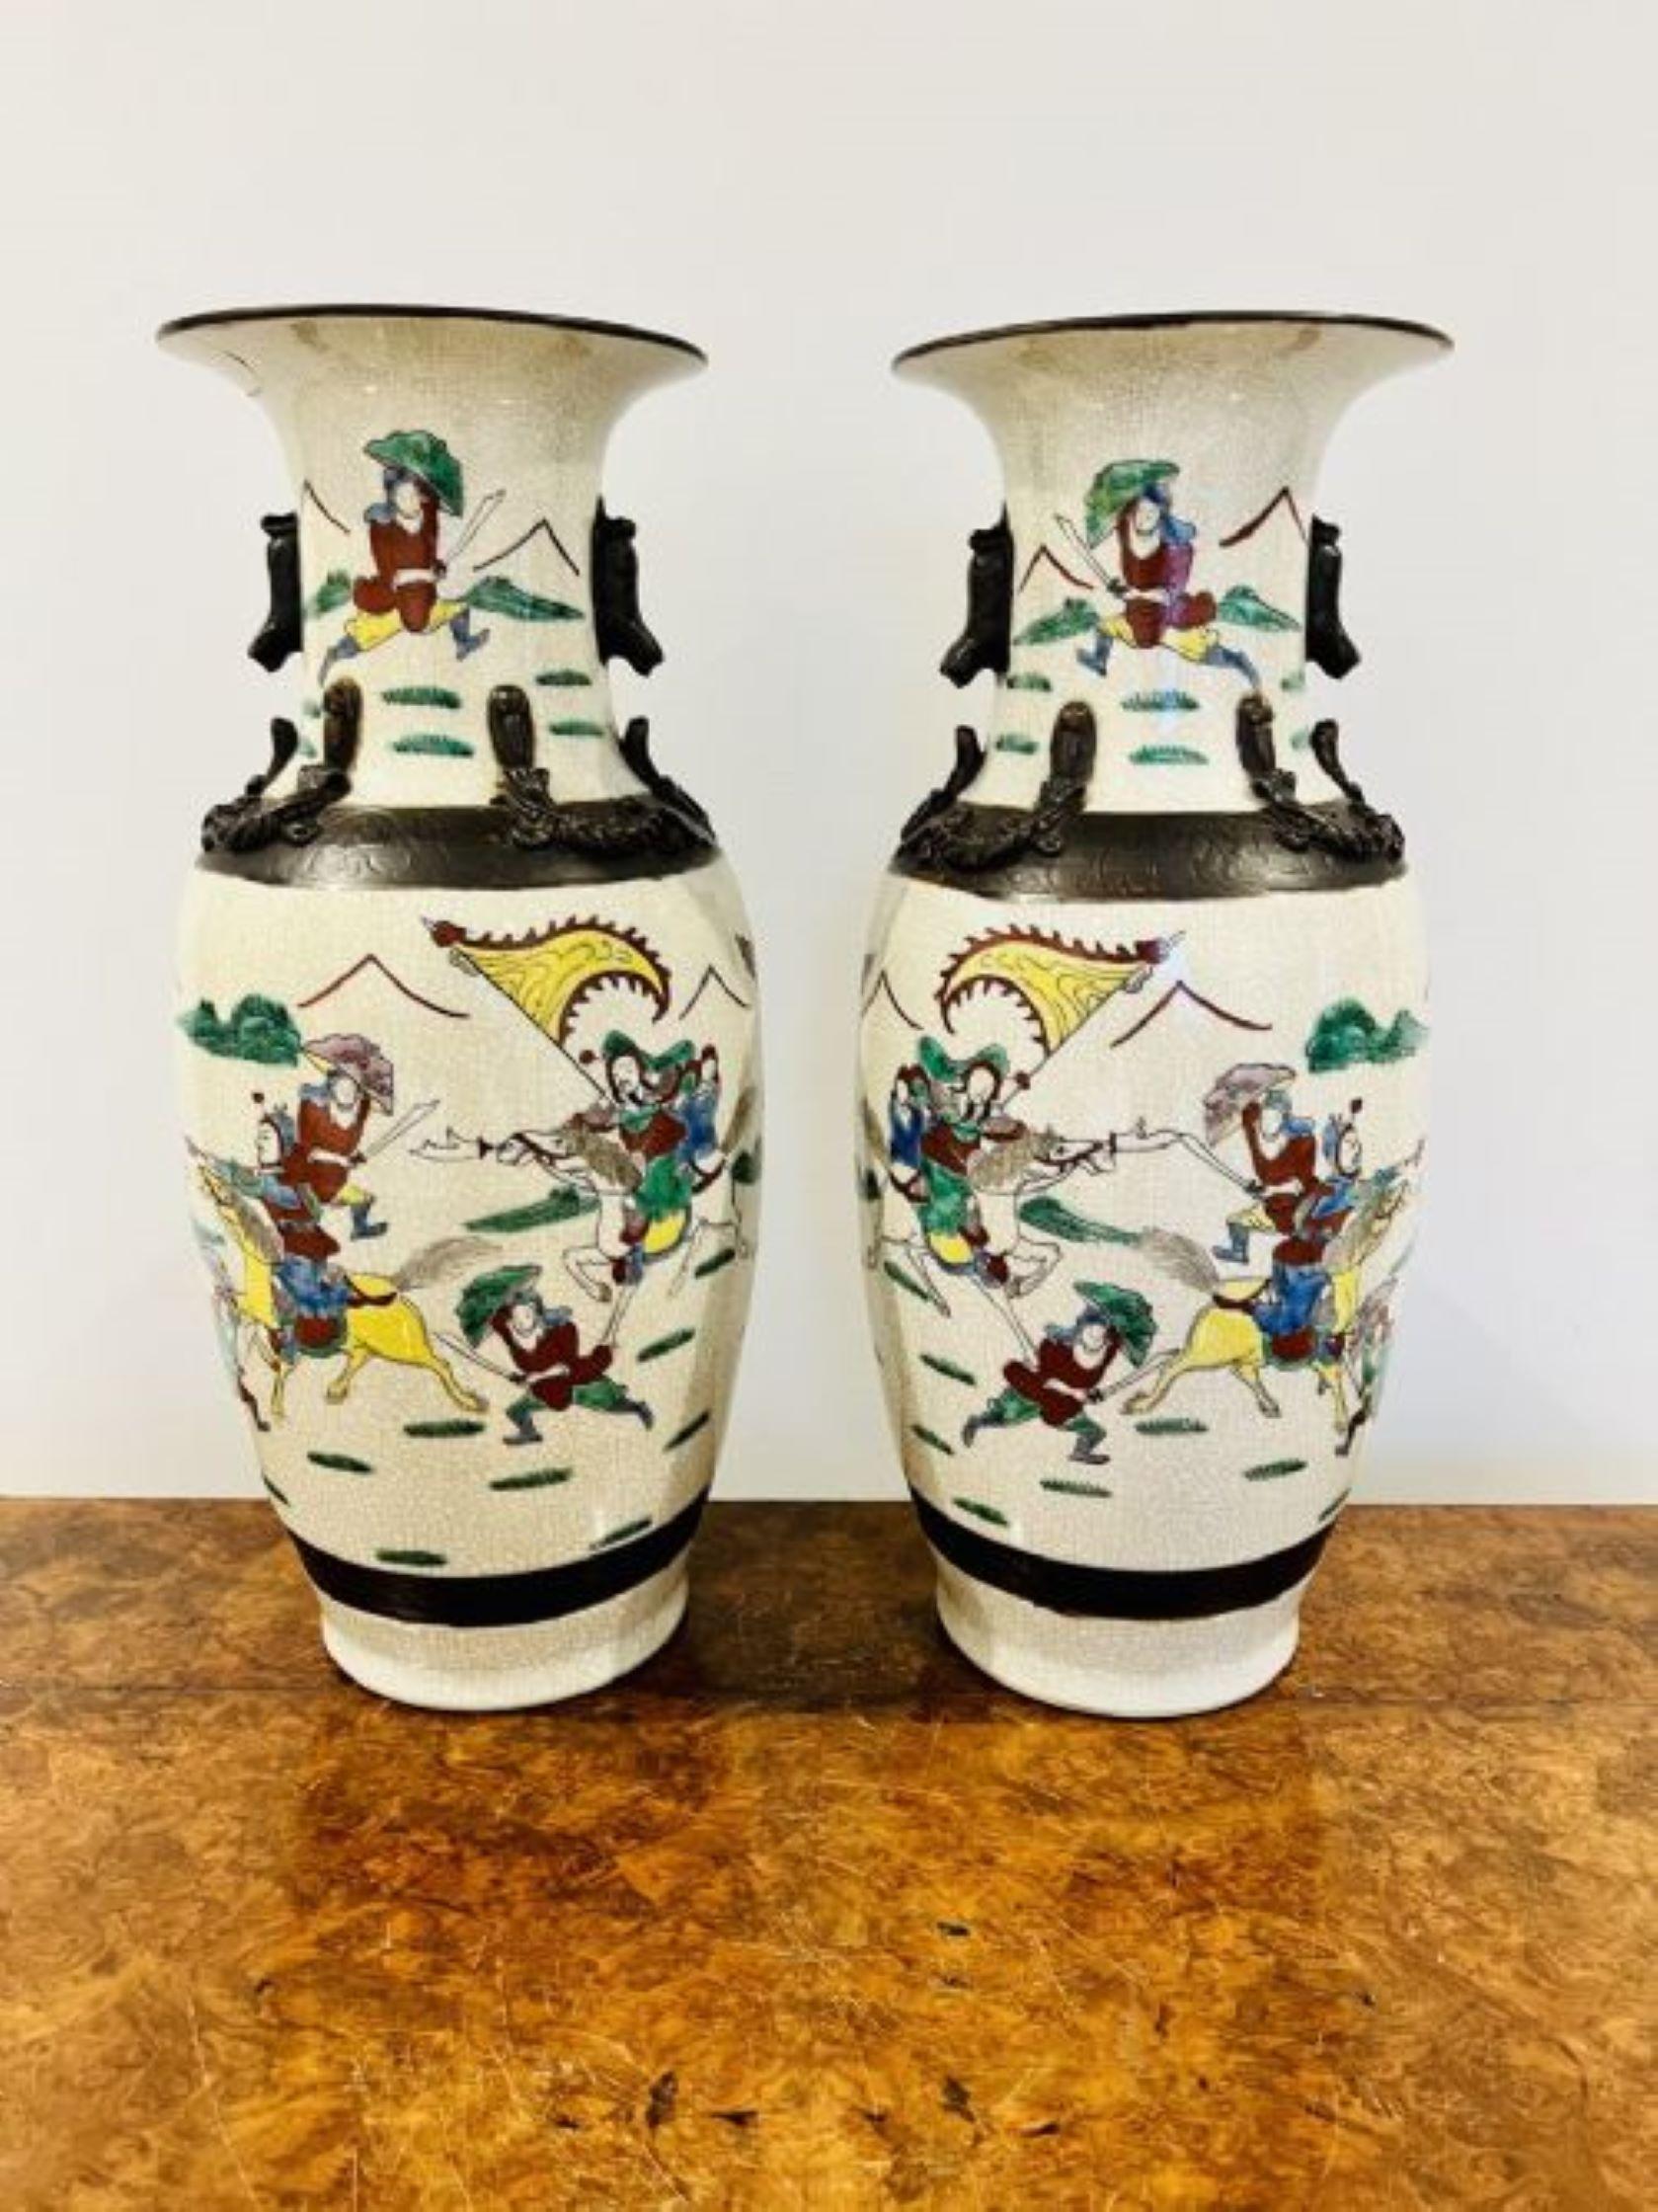 Großes Paar von antiken viktorianischen Qualität chinesische geknackt glasierte Vasen in wunderbaren roten, blauen, grünen, gelben, braunen und weißen Emaillen verziert Darstellung kriegerischen Szenen kleine Restaurierung auf einer der Vasen wie